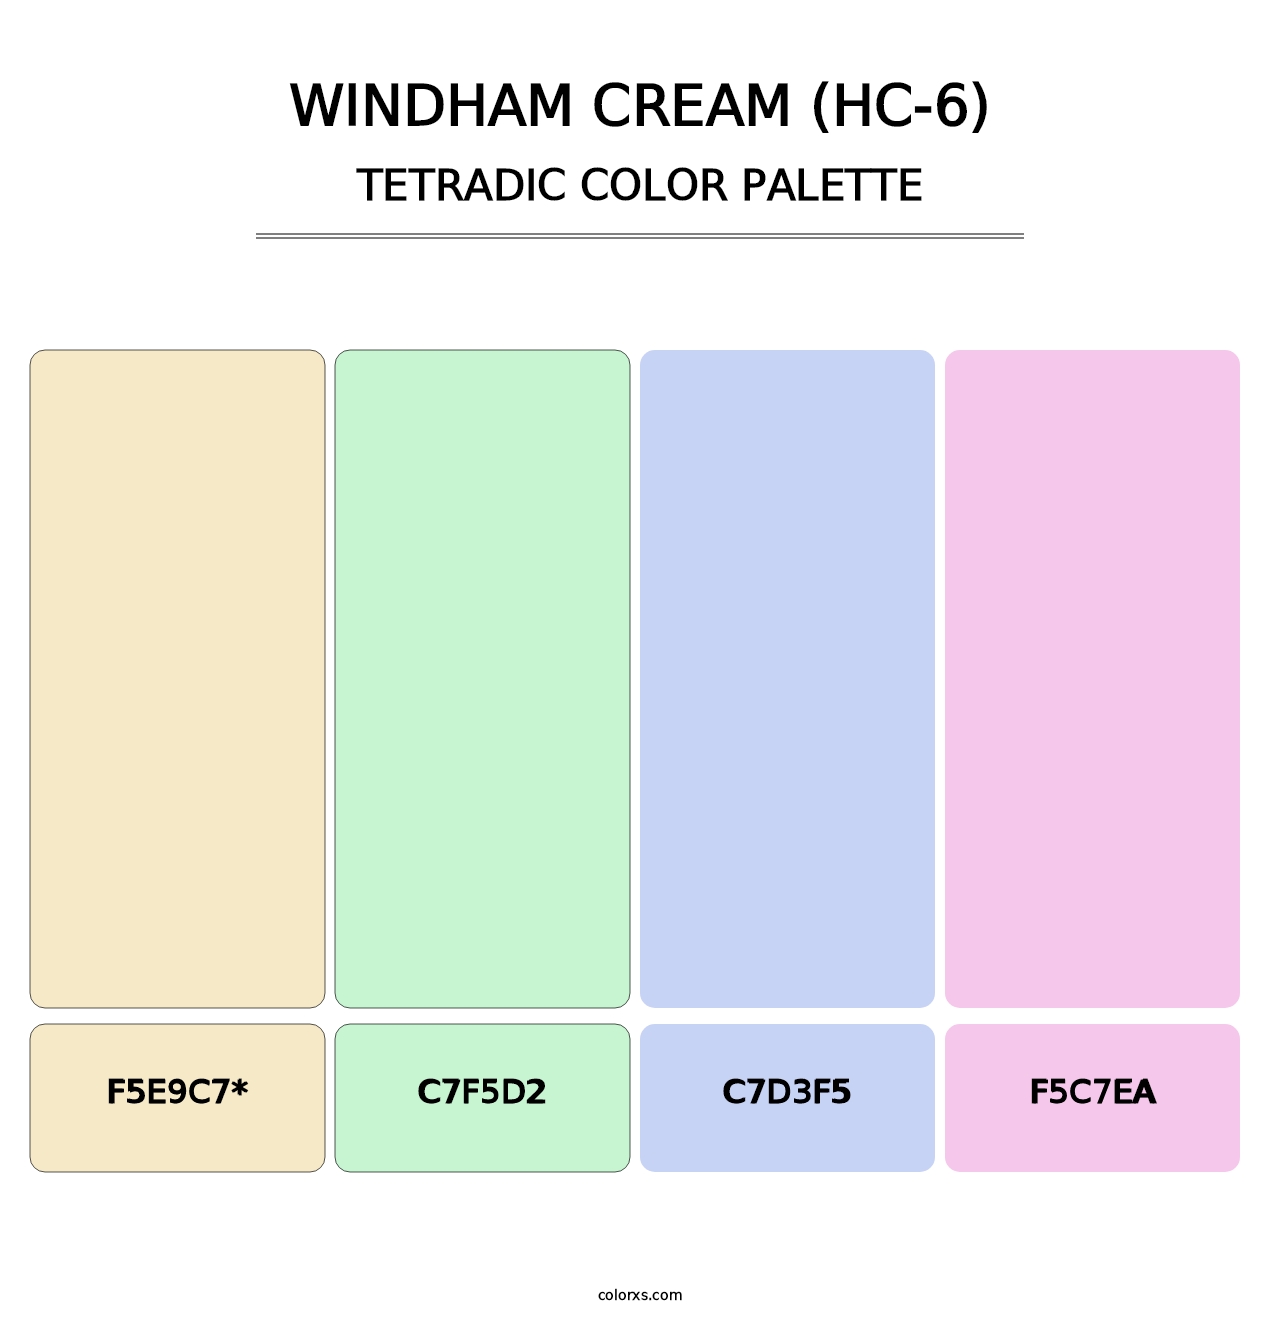 Windham Cream (HC-6) - Tetradic Color Palette